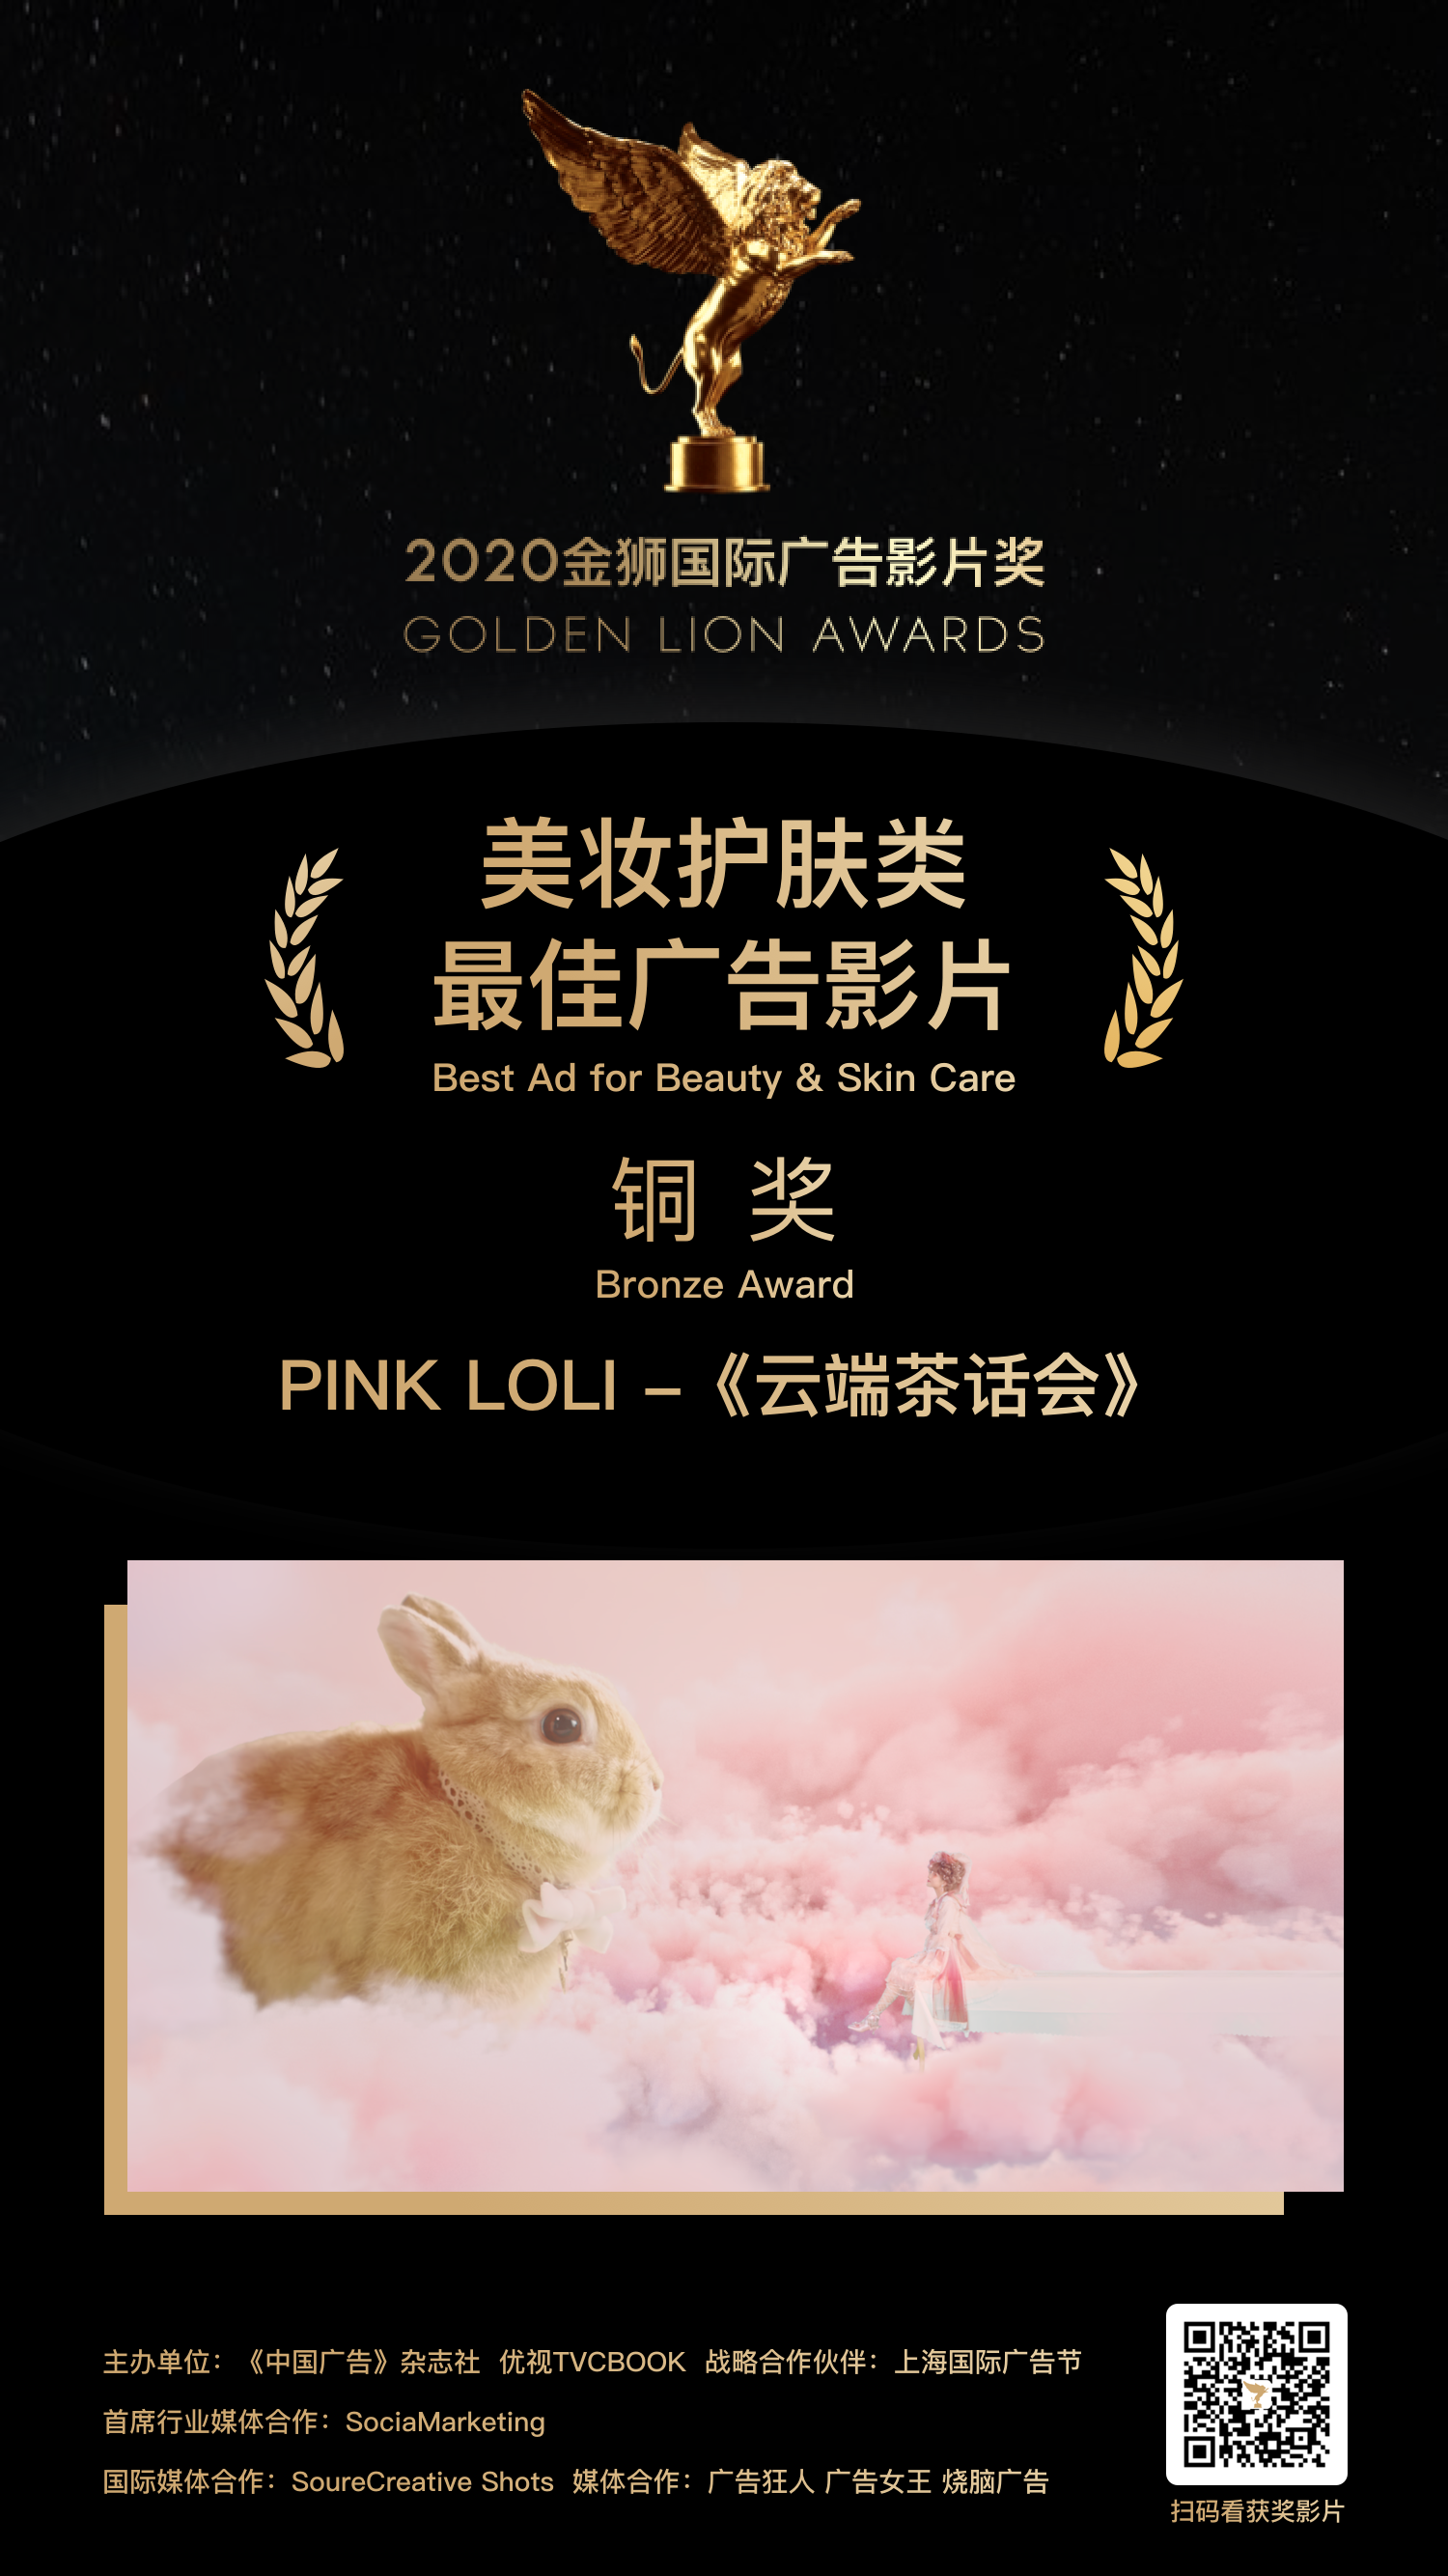 铜奖-PINK LOLI -《云端茶话会》.png